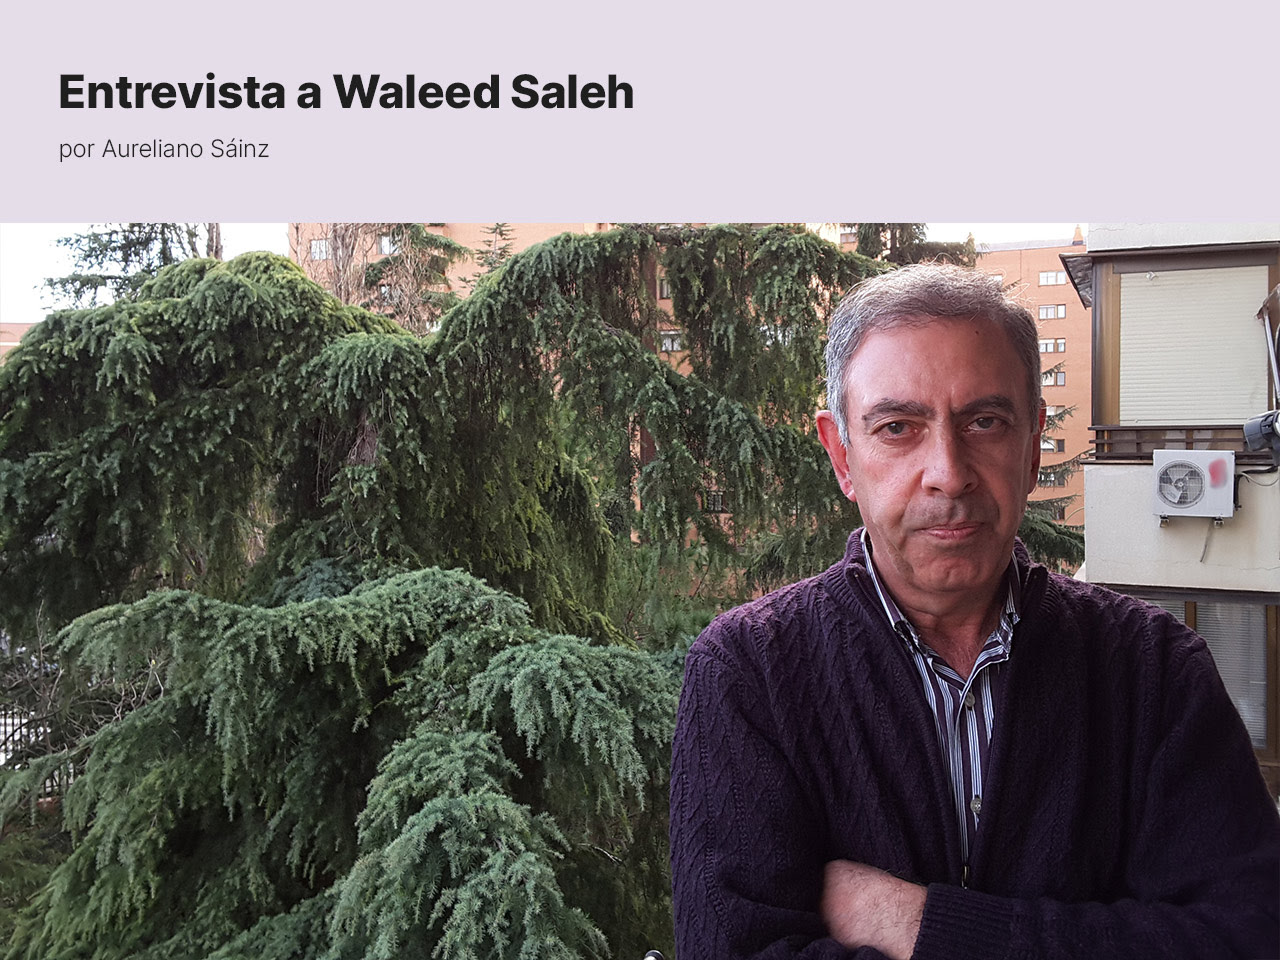 Entrevista a Waleed Saleh: Islam, democracia y laicismo (2ª parte)